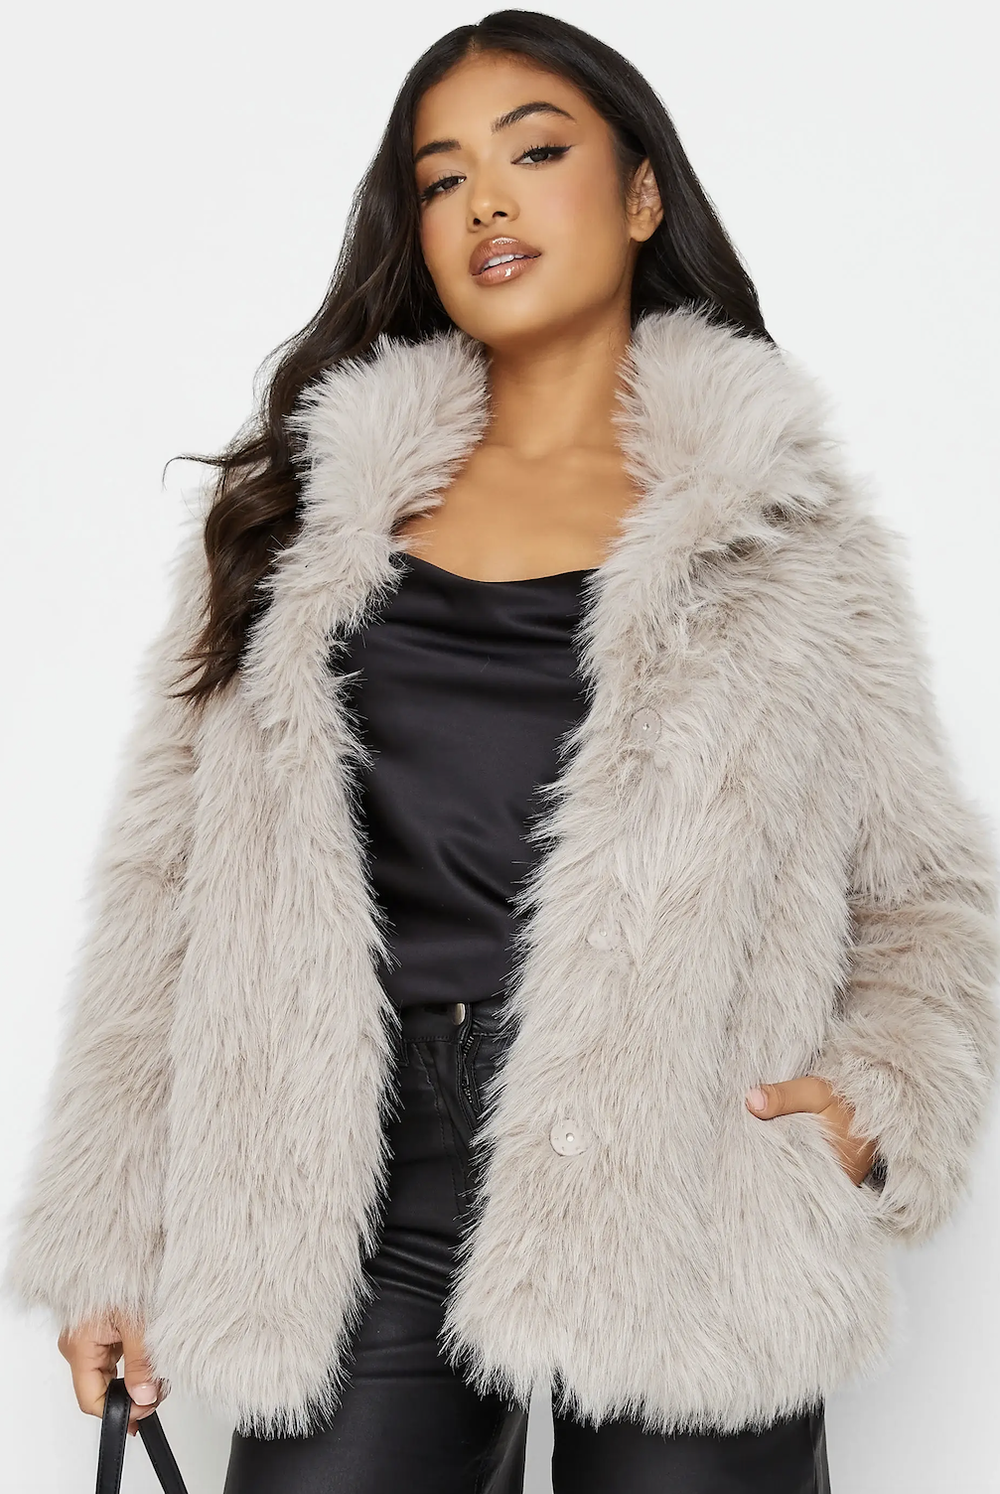 PixieGirl Light Grey Faux Fur Coat £79.99